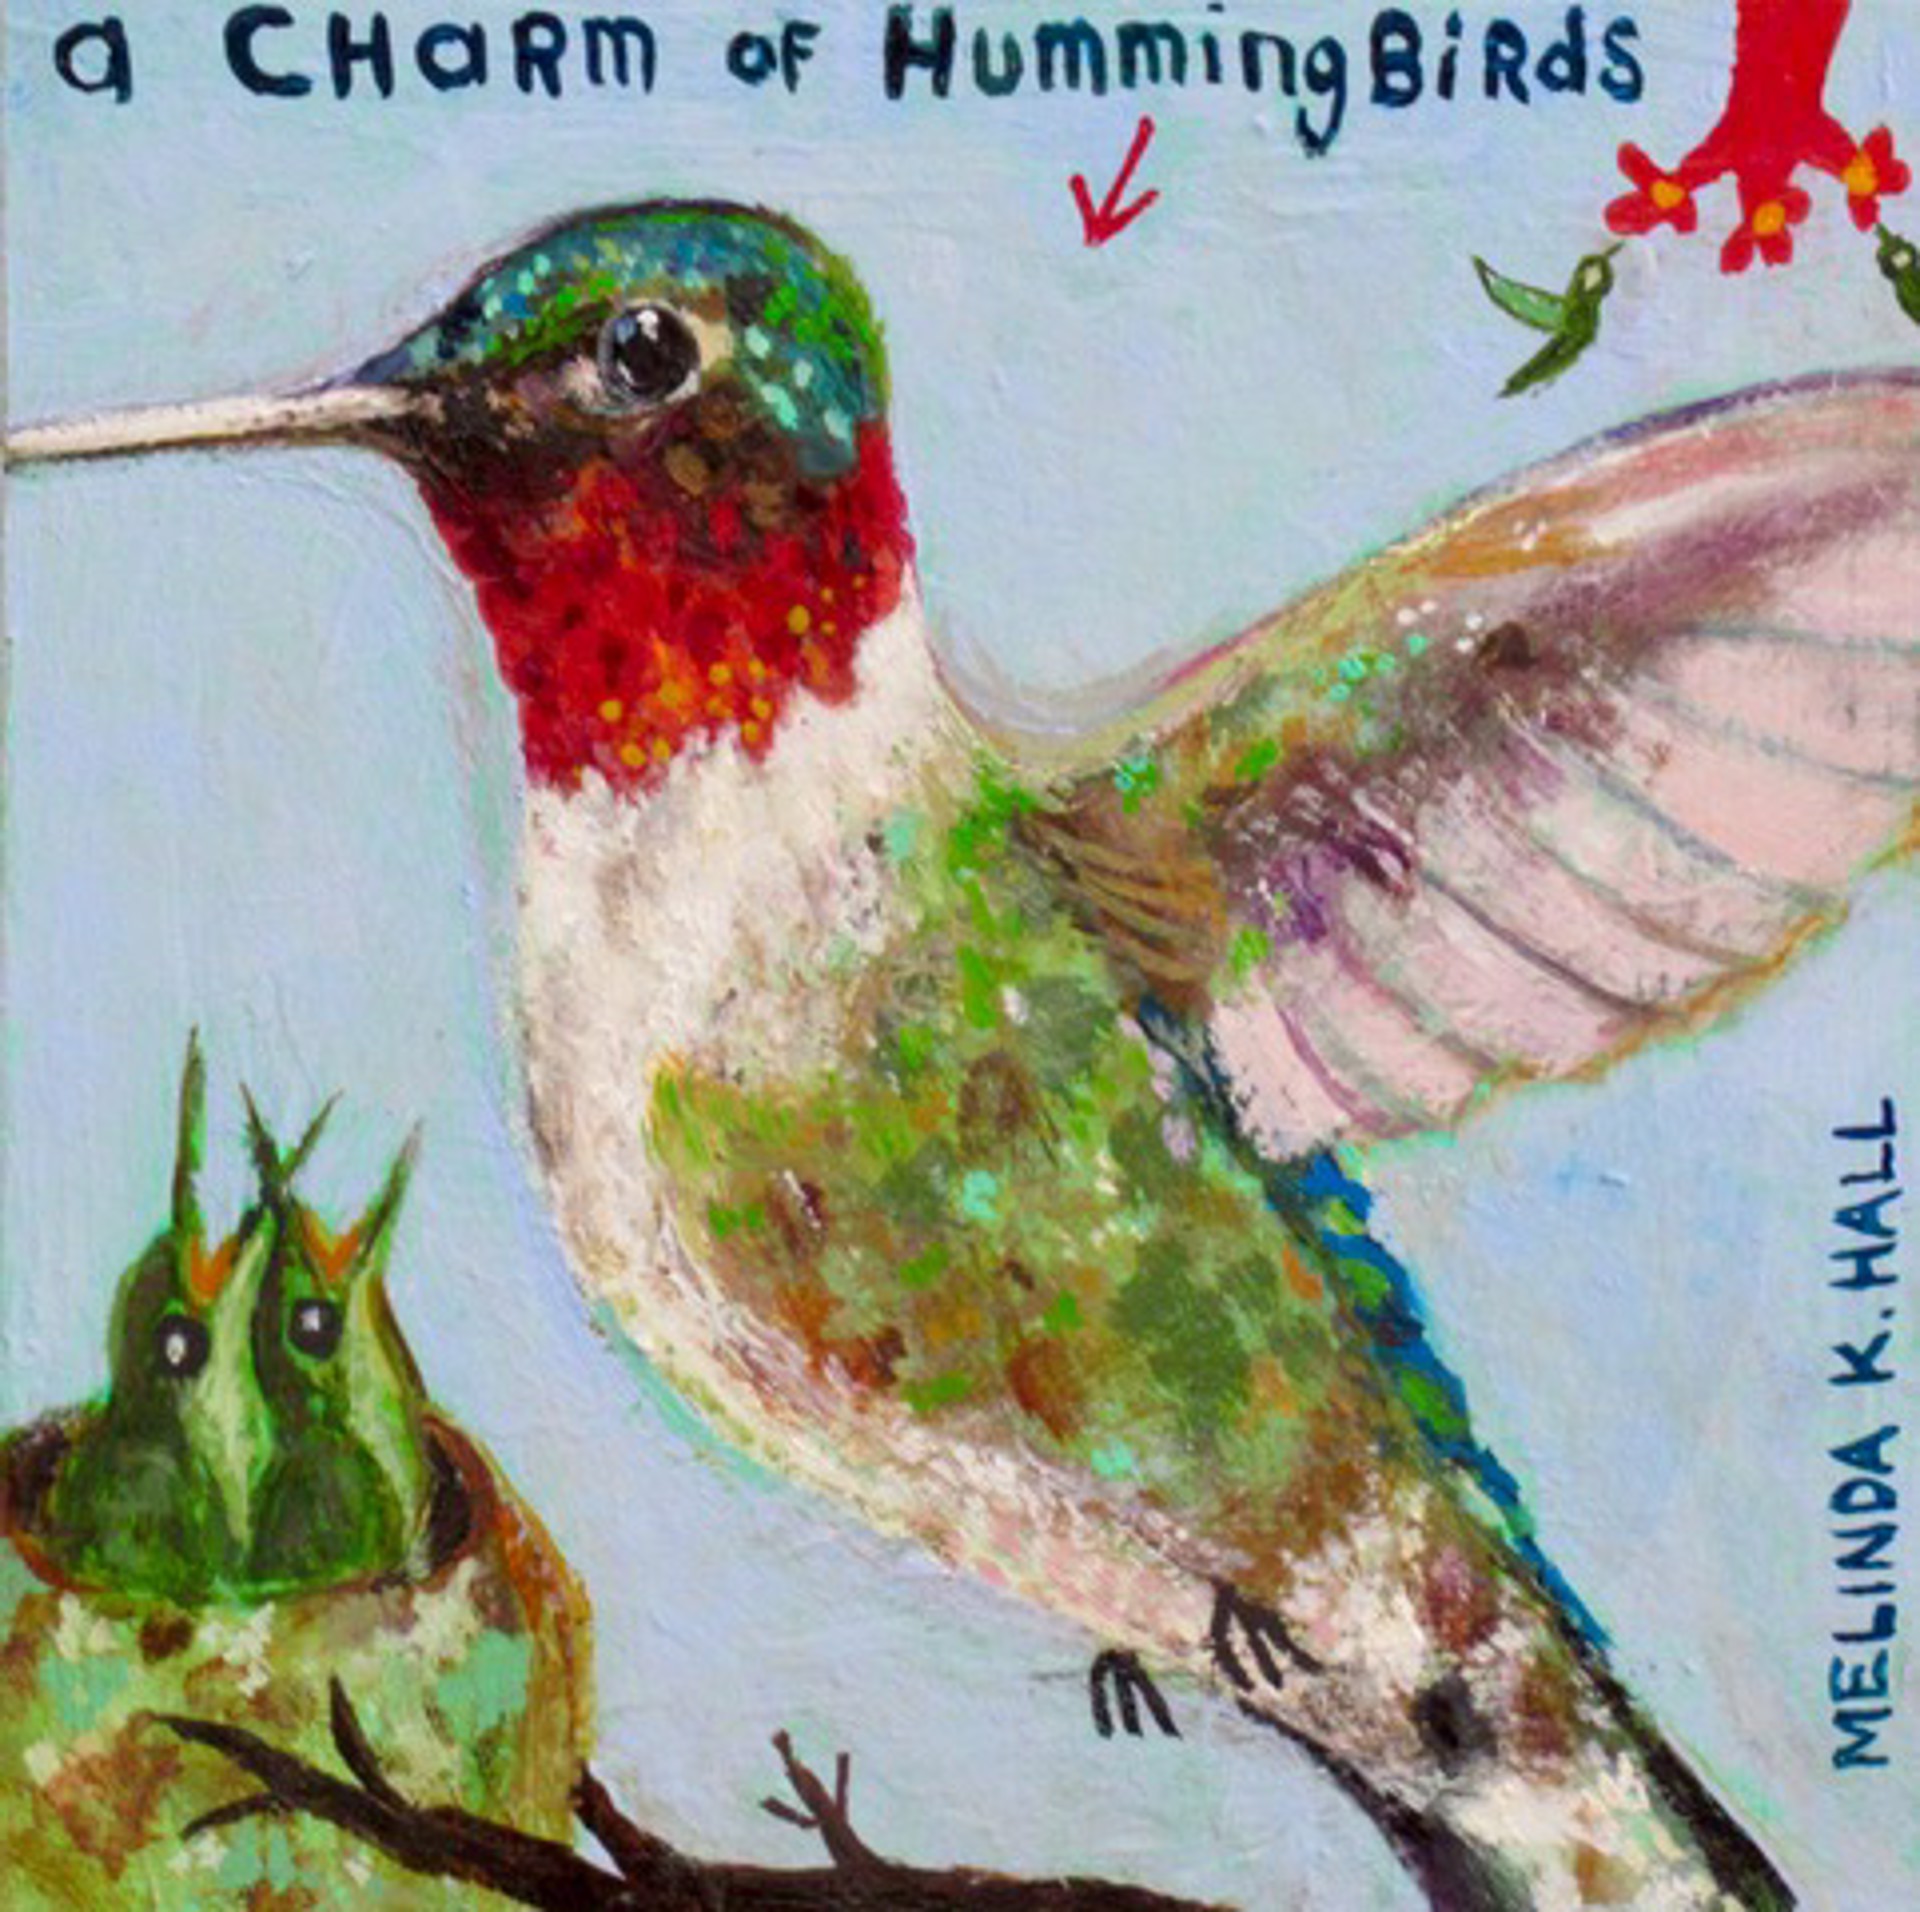 A Charm of Hummingbirds III by Melinda K. Hall